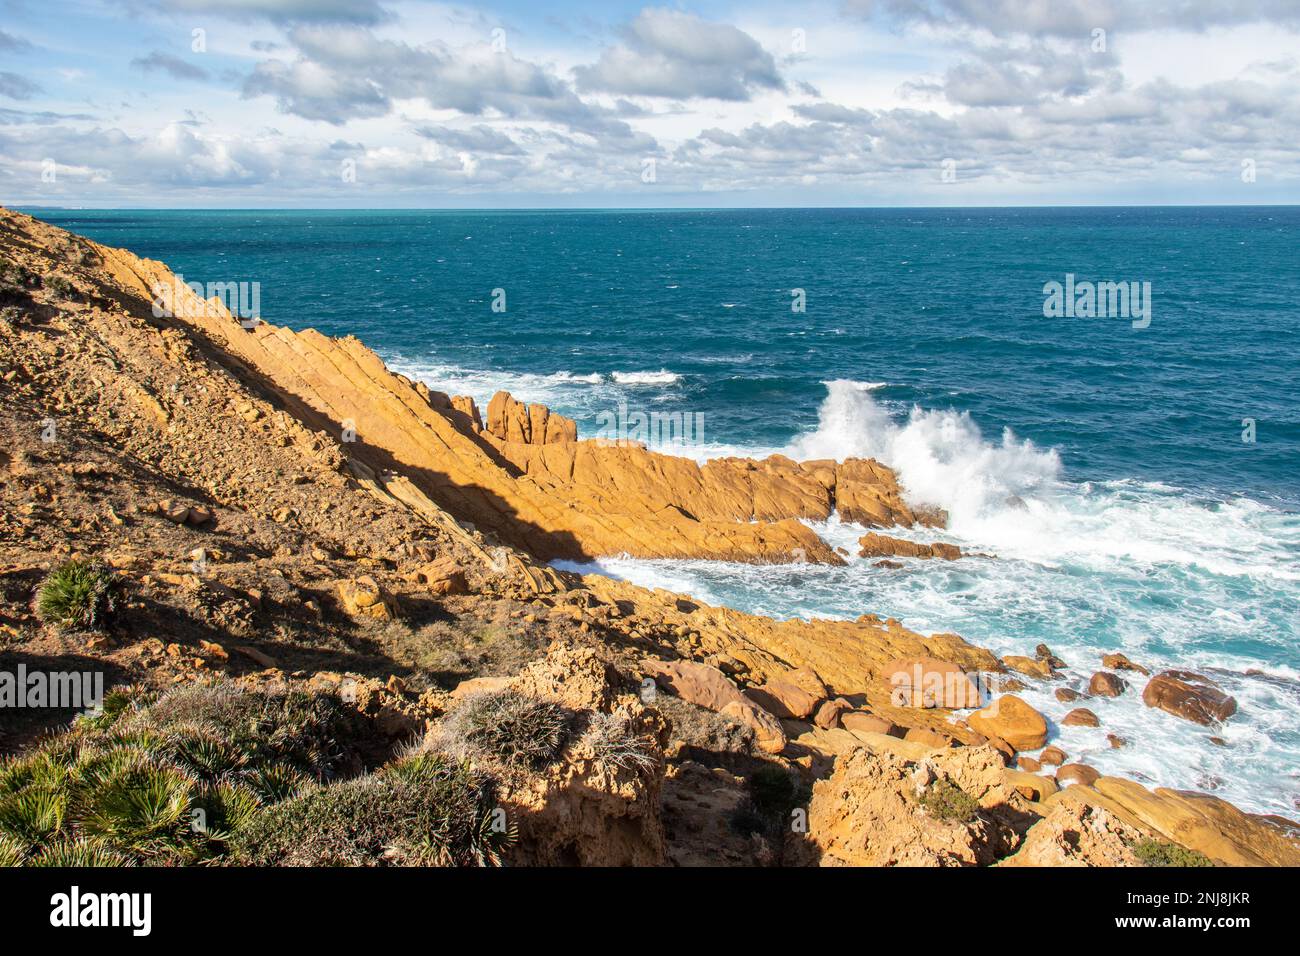 Port aux Princes, Tunisie, falaises et rochers, paysage de la mer Méditerranée avec beau ciel bleu. Escapade céleste. Takelsa Banque D'Images